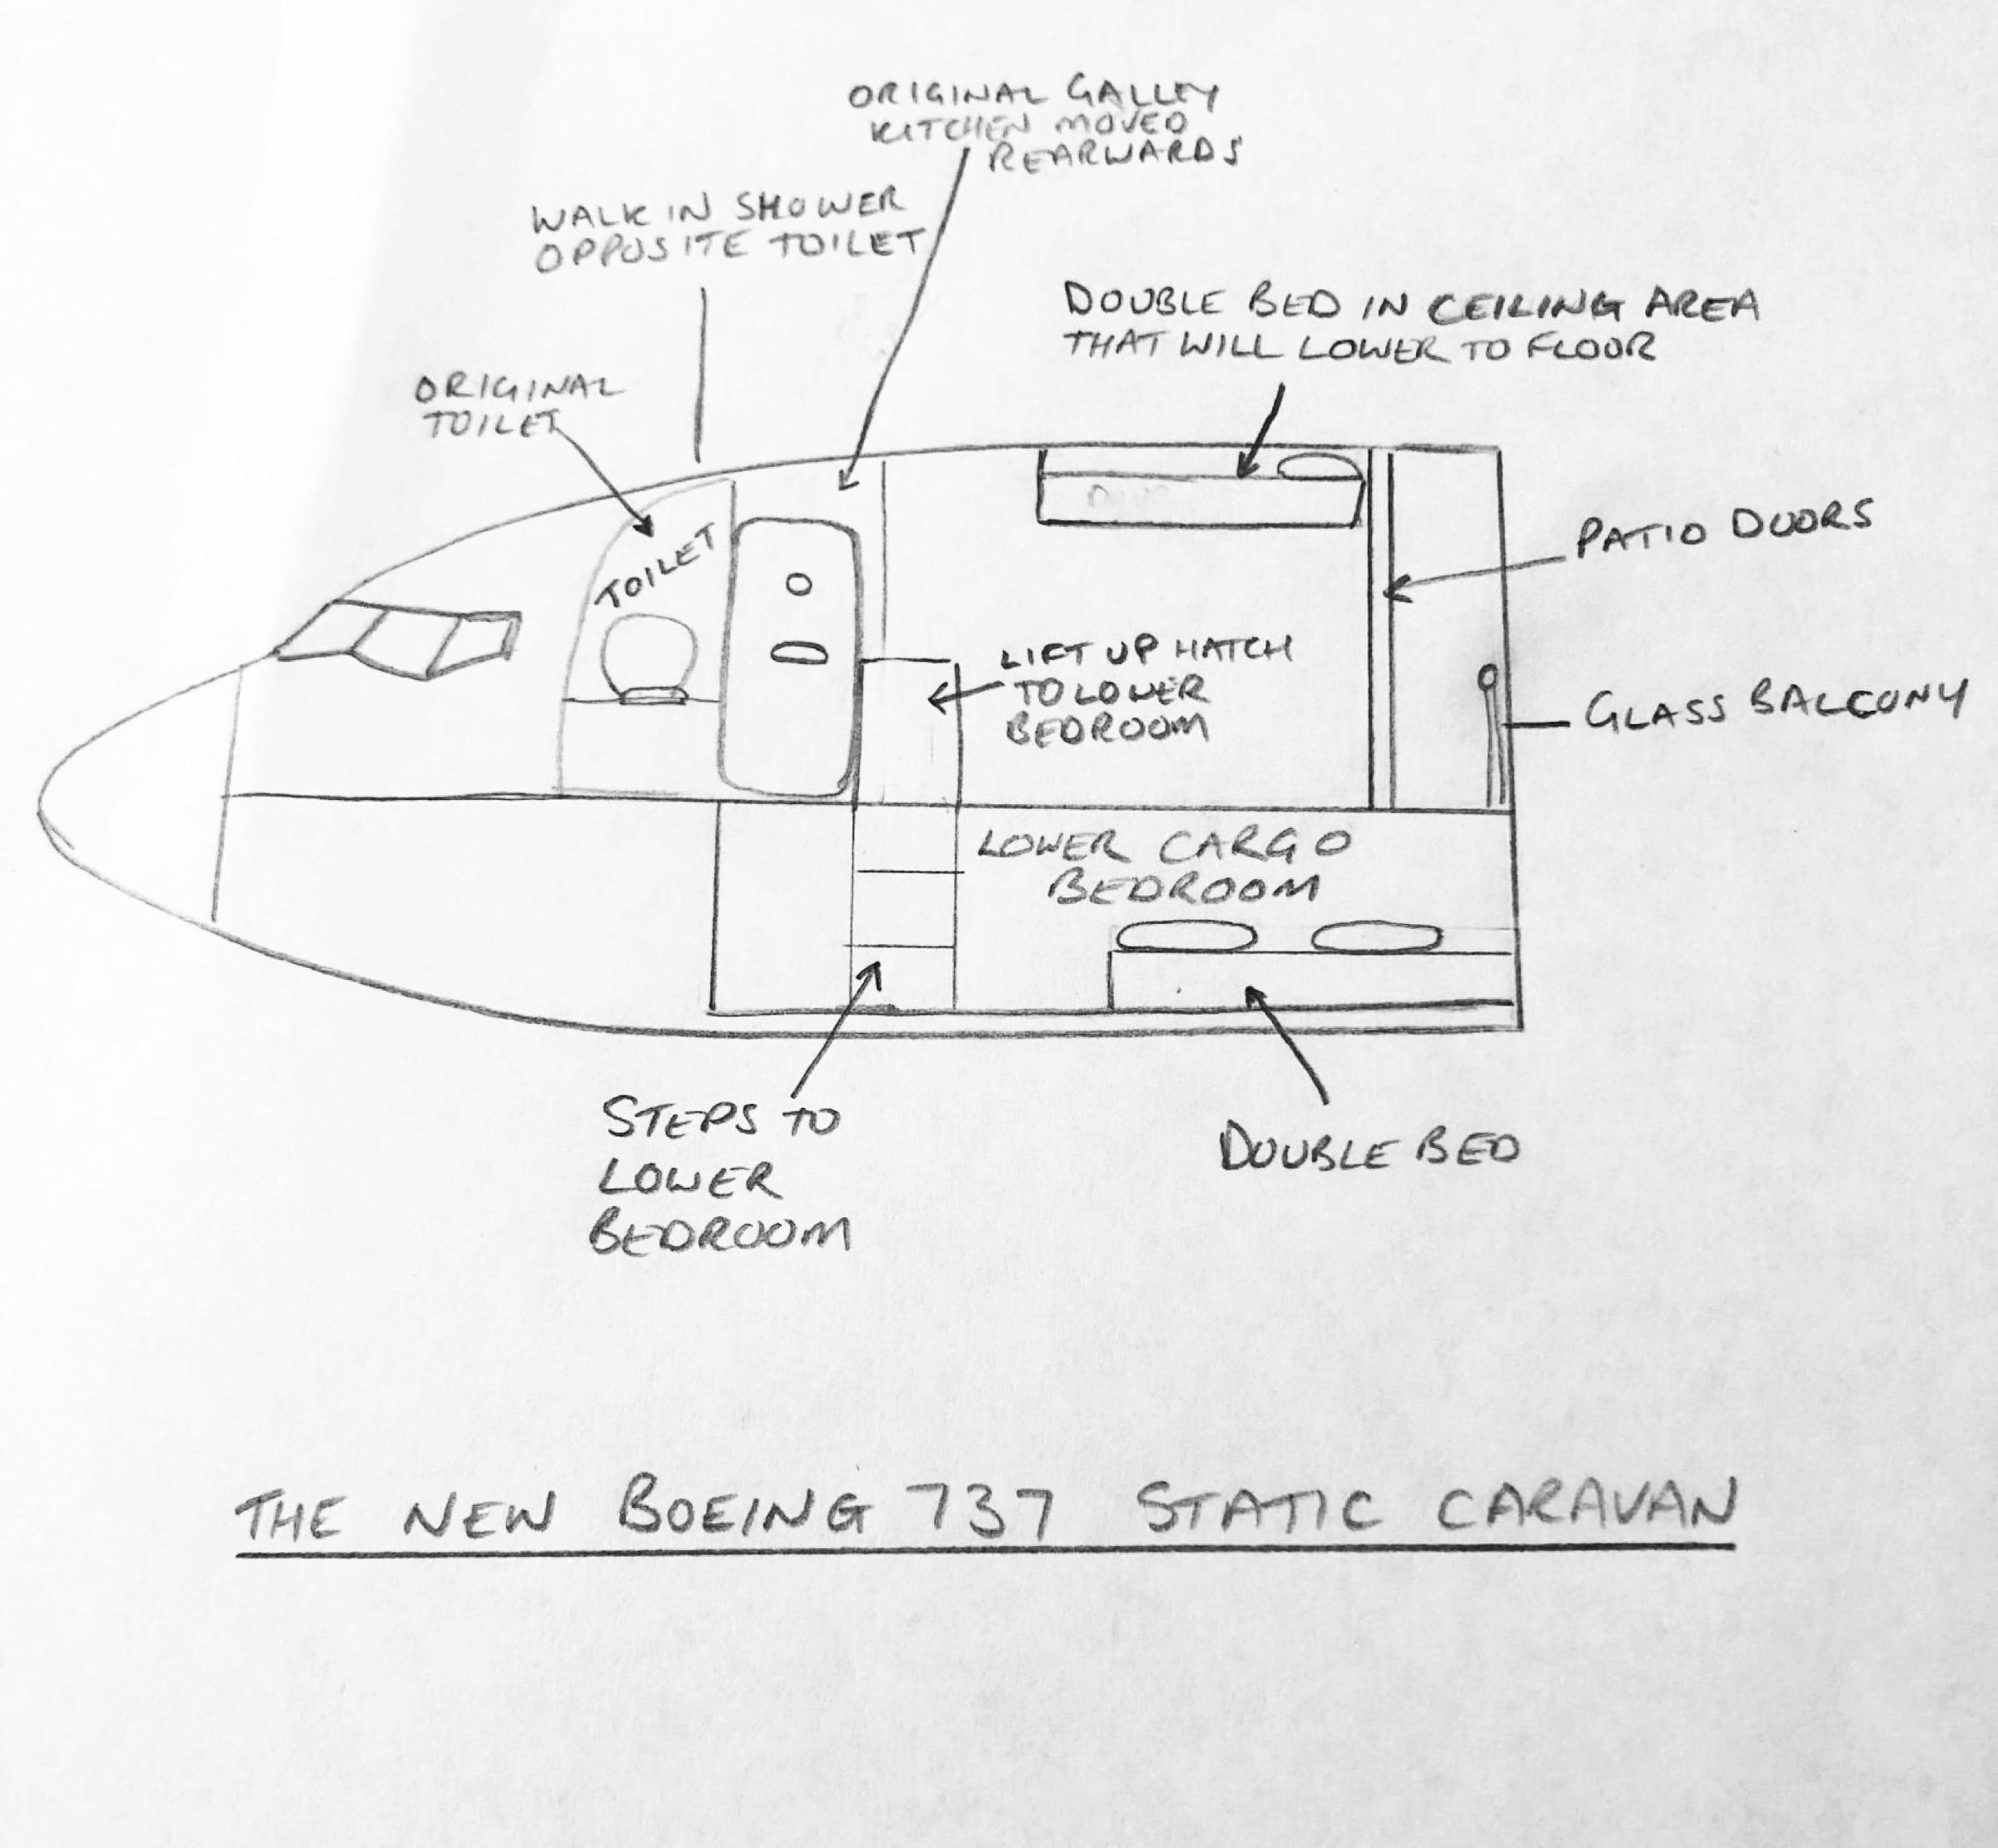 Un esquema de los planes de Jones para la caravana Boeing 737.